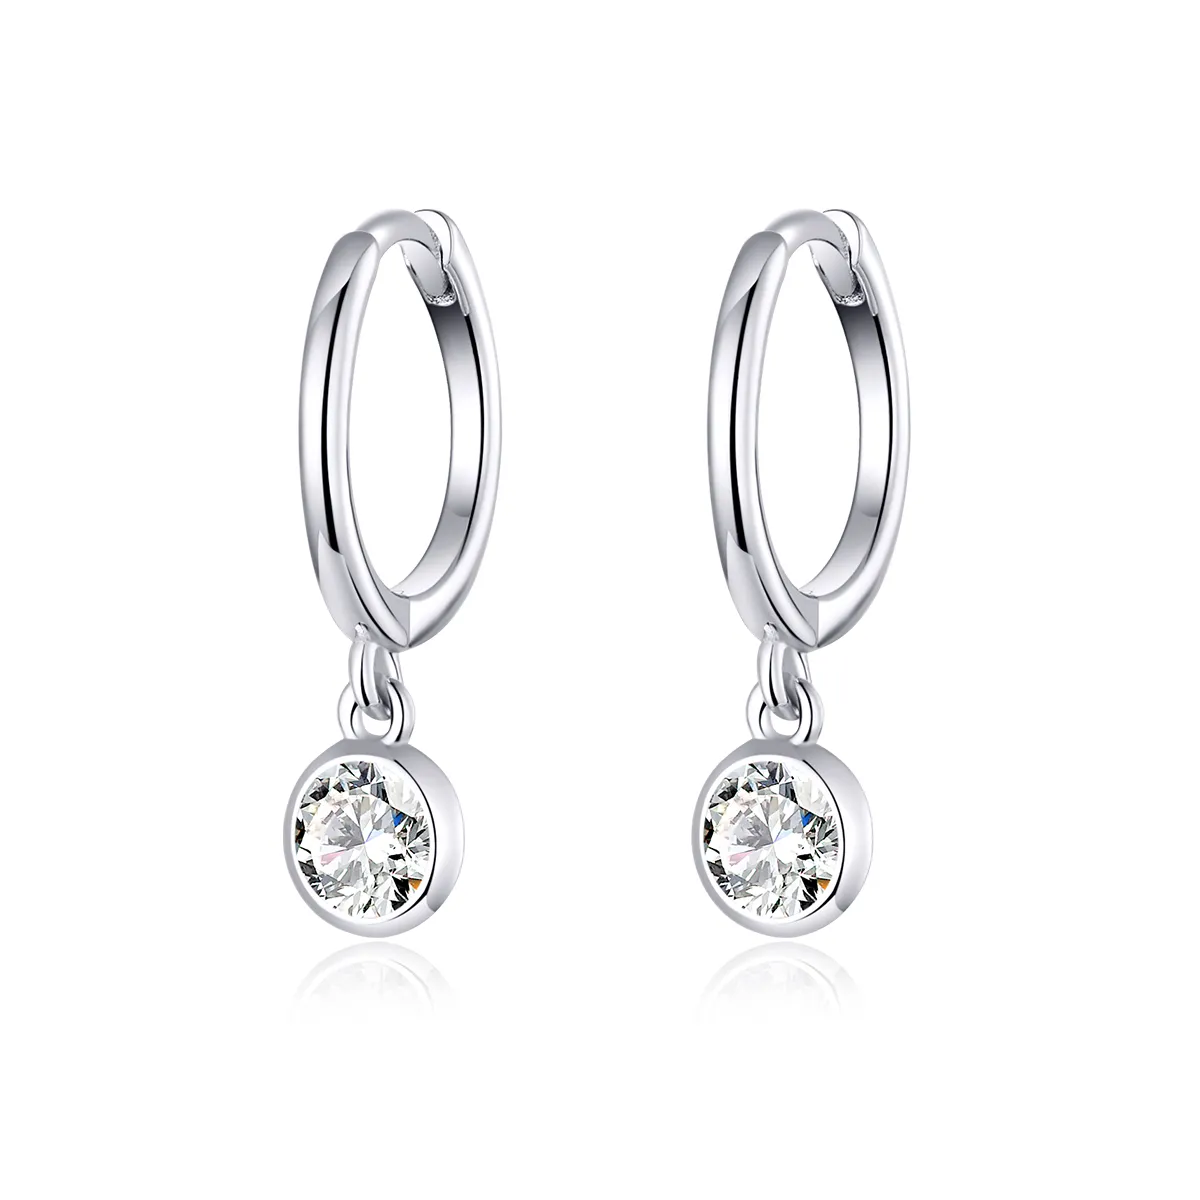 Pandora Style Silver Zirconia Dangle Earrings - SCE830